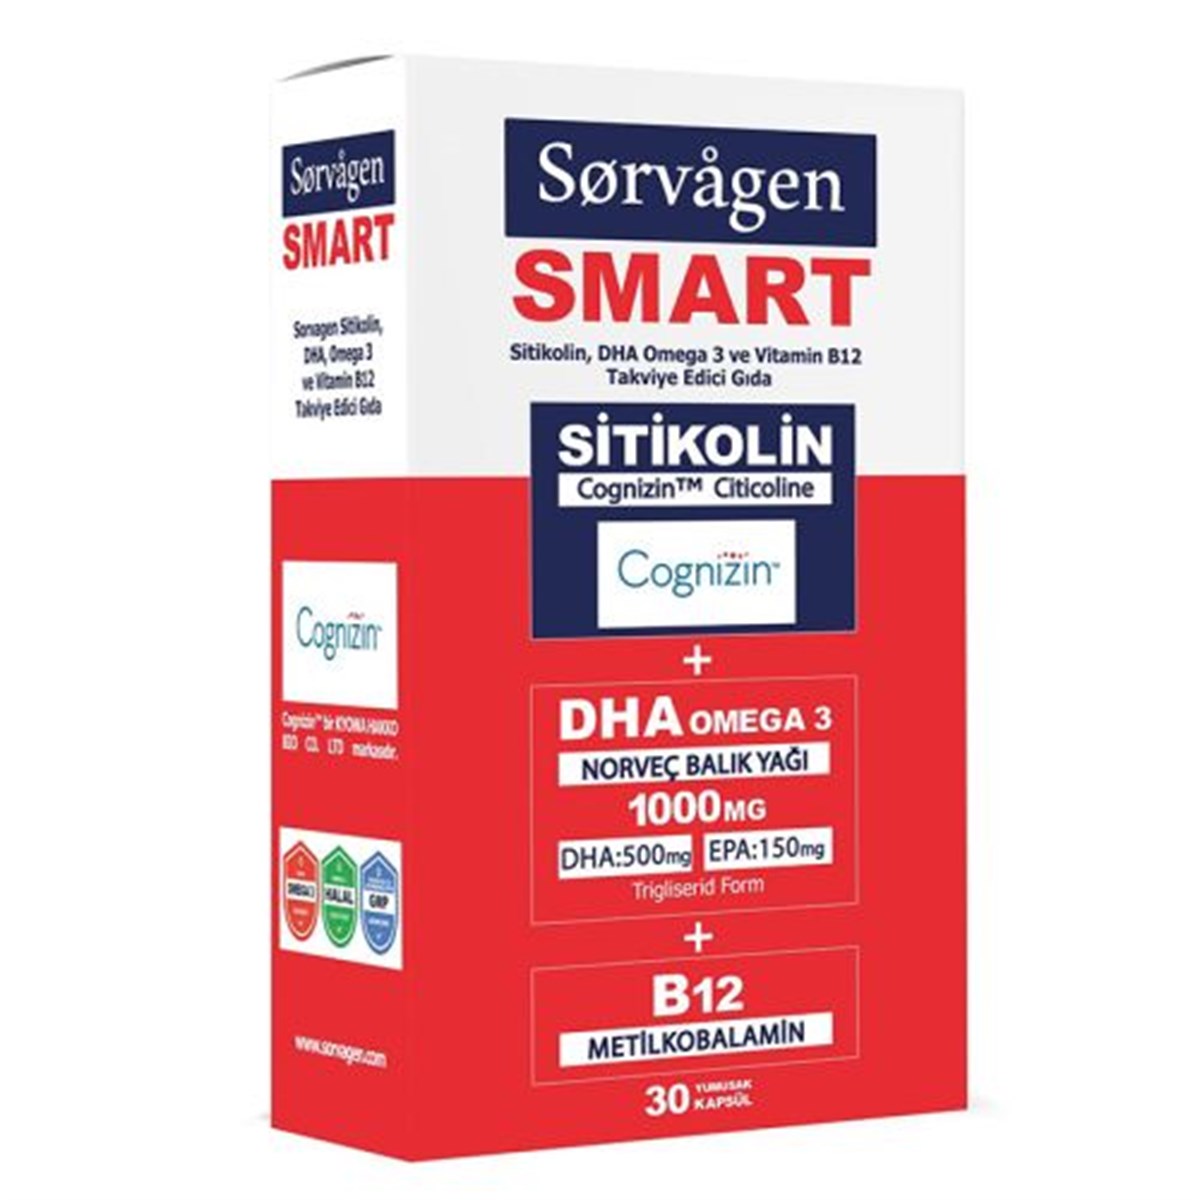 Sorvagen Smart Sitikolin DHA Omega 3 ve B12 Takviye Edici Gıda